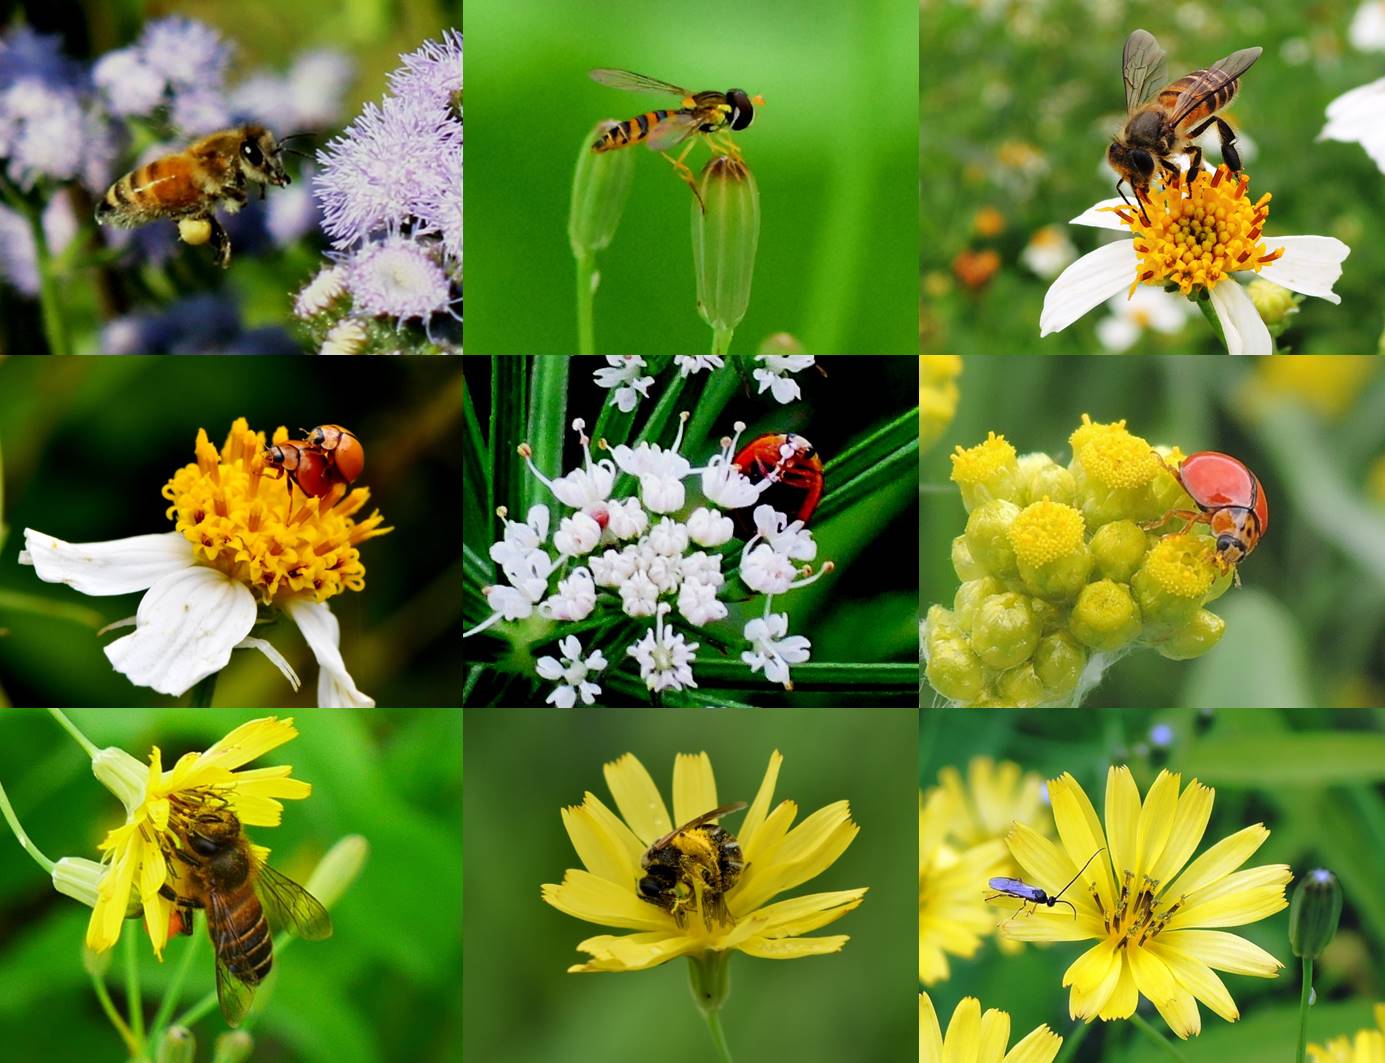 農田周邊的野花，不僅可以點綴農田景觀，花朵上甜美的花蜜與營養的花粉更吸引了蜜蜂、瓢蟲、食蚜蠅等昆蟲。